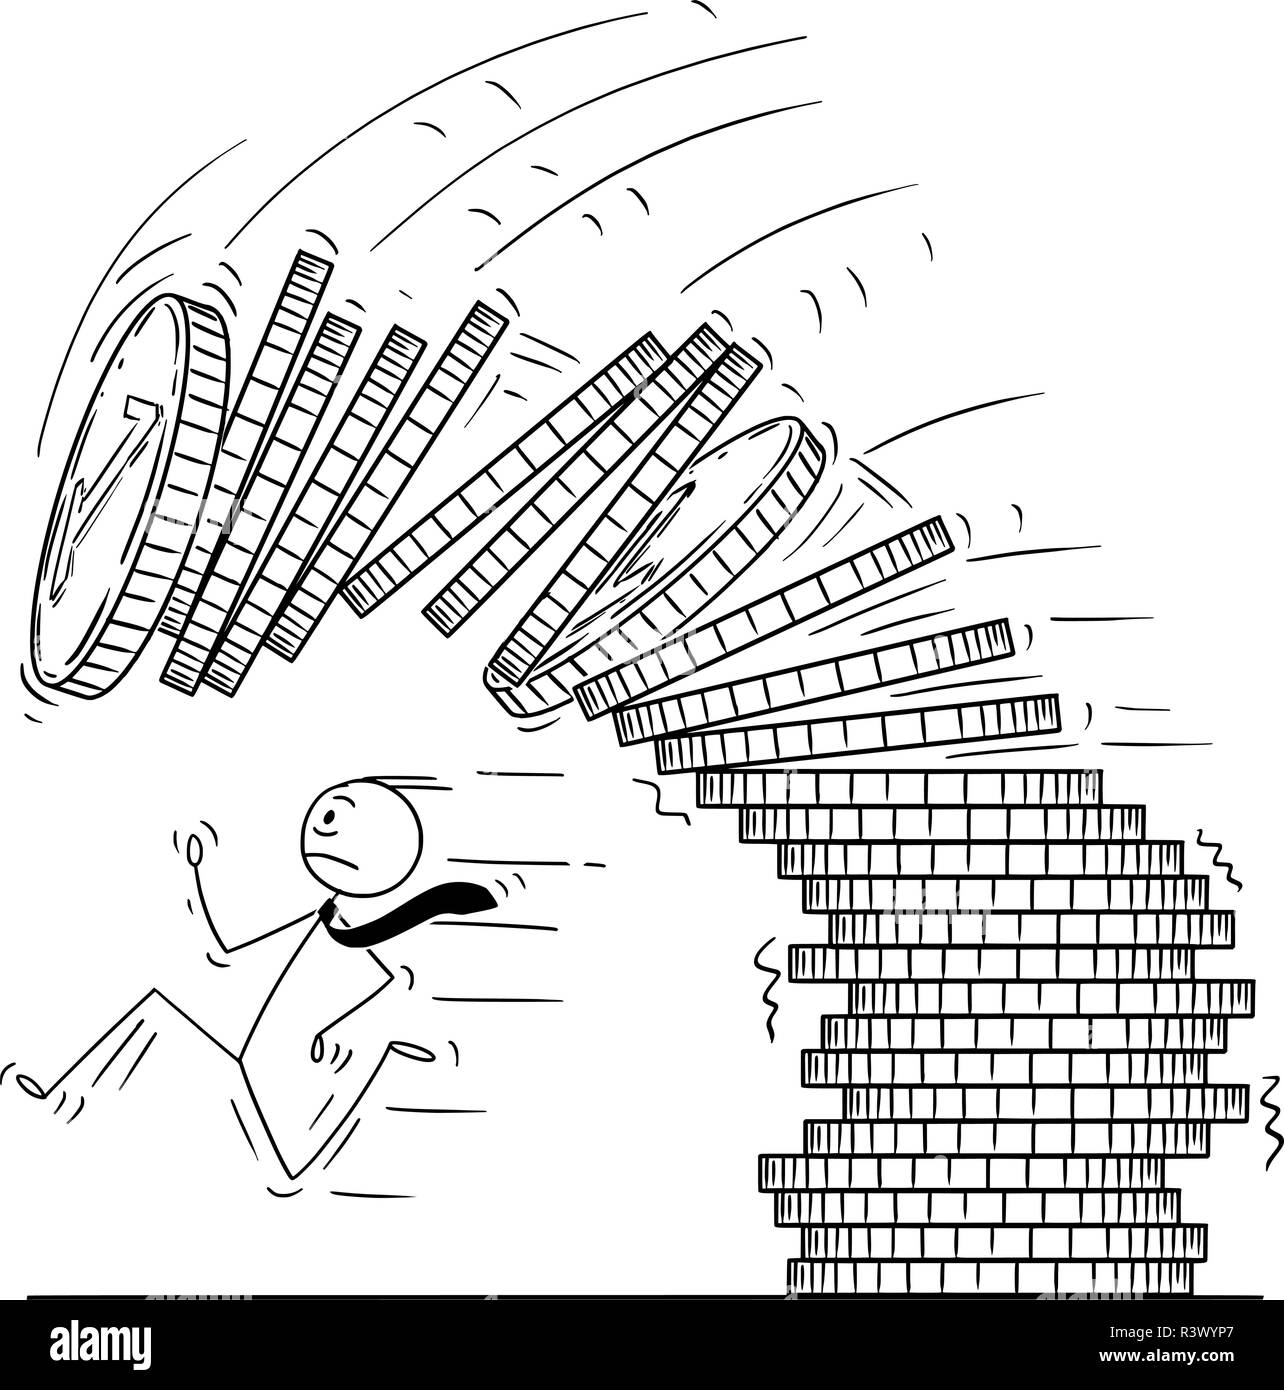 Caricatura del empresario huyendo de caer un montón o pila de monedas Ilustración del Vector